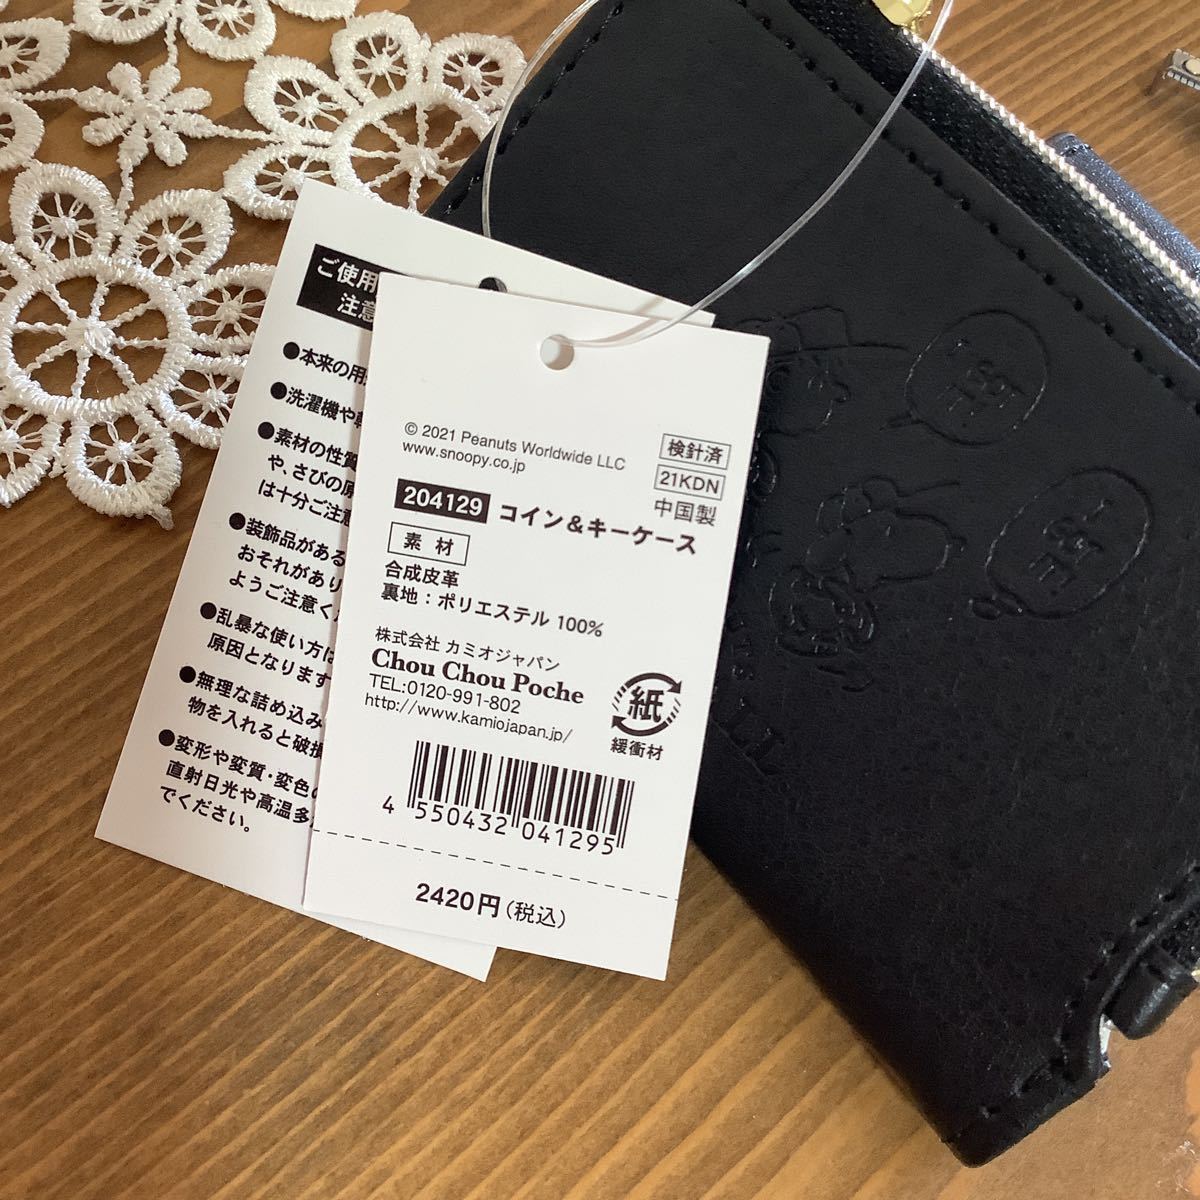  Snoopy чехол для ключей стоимость доставки 140 иен новый товар искусственная кожа кошелек ячейка для монет кошелек для мелочи .